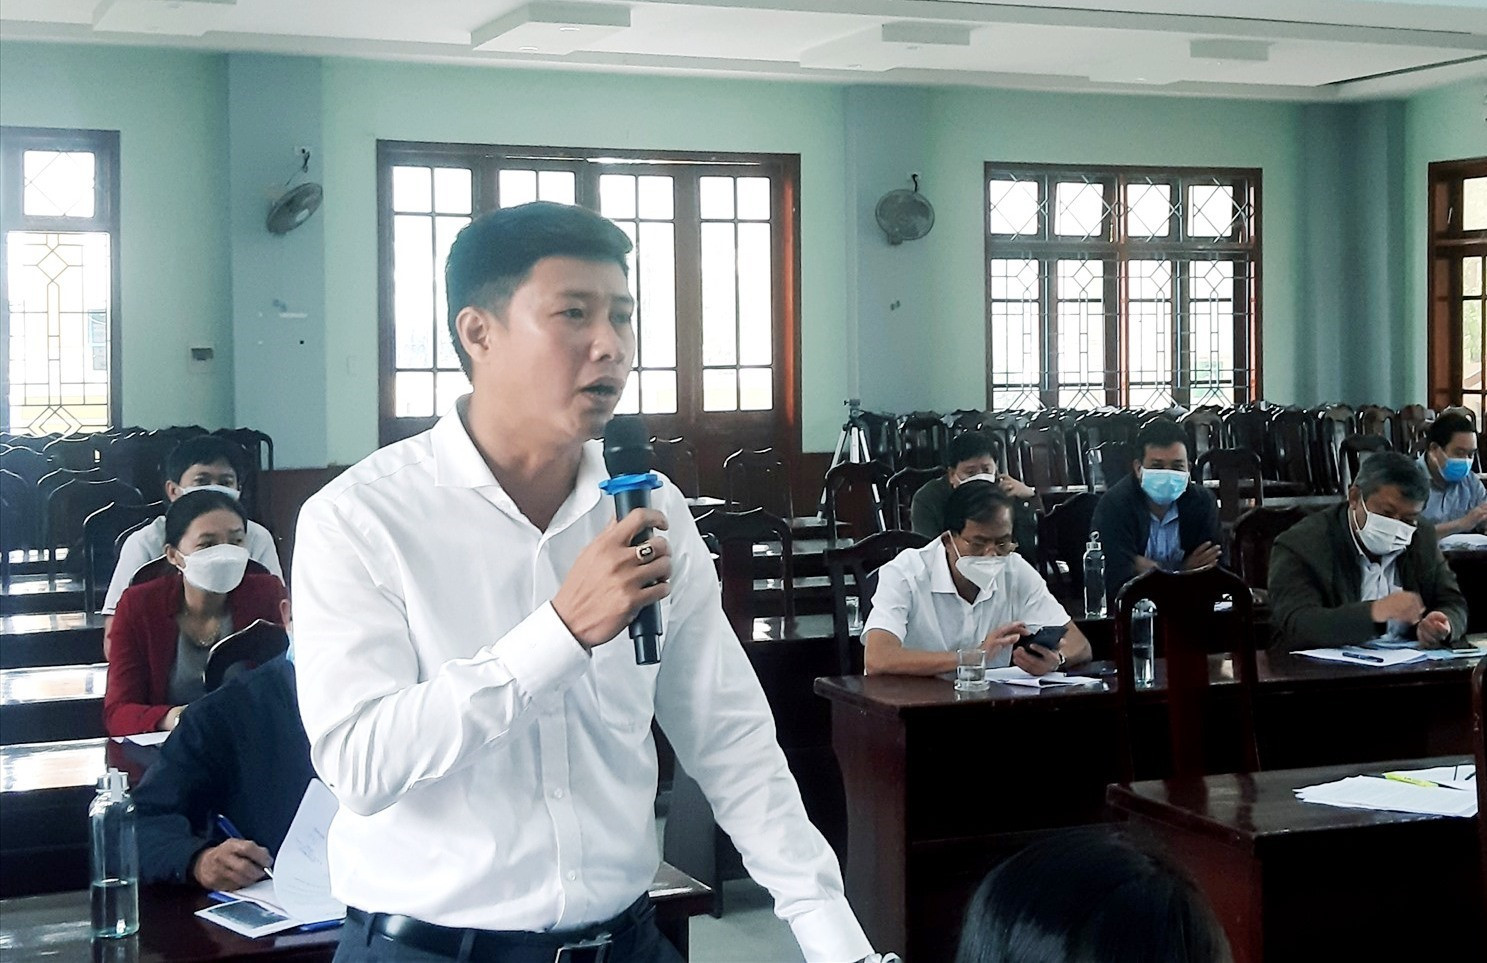 Ông Lê Quang Khánh – Bí thư Đảng ủy xã Quế Phú thông tin về tình hình kinh tế - xã hội của địa phương và nêu một số kiến nghị. Ảnh: VĂN SỰ